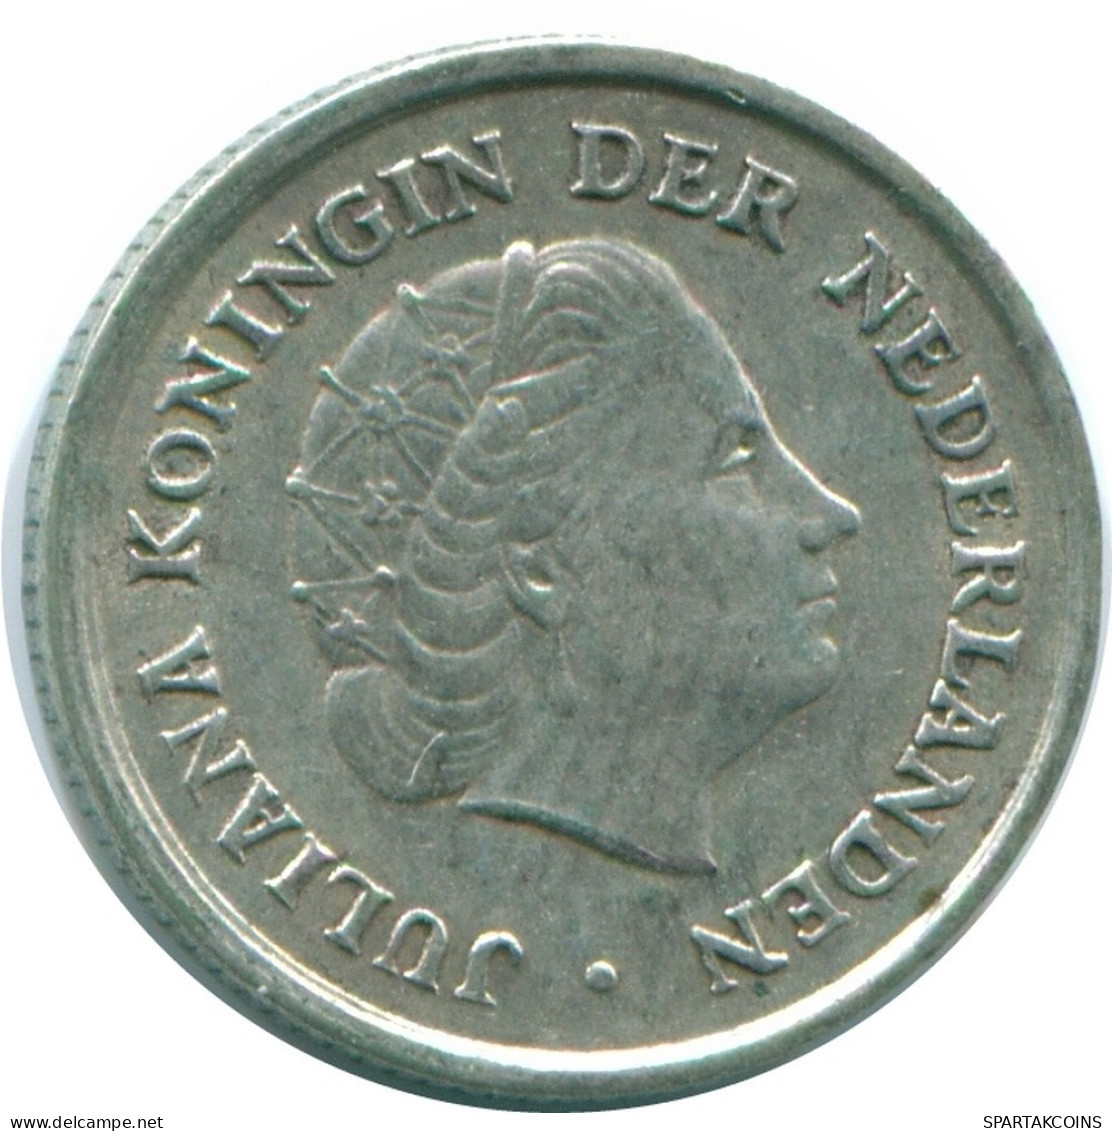 1/10 GULDEN 1966 NIEDERLÄNDISCHE ANTILLEN SILBER Koloniale Münze #NL12669.3.D.A - Niederländische Antillen